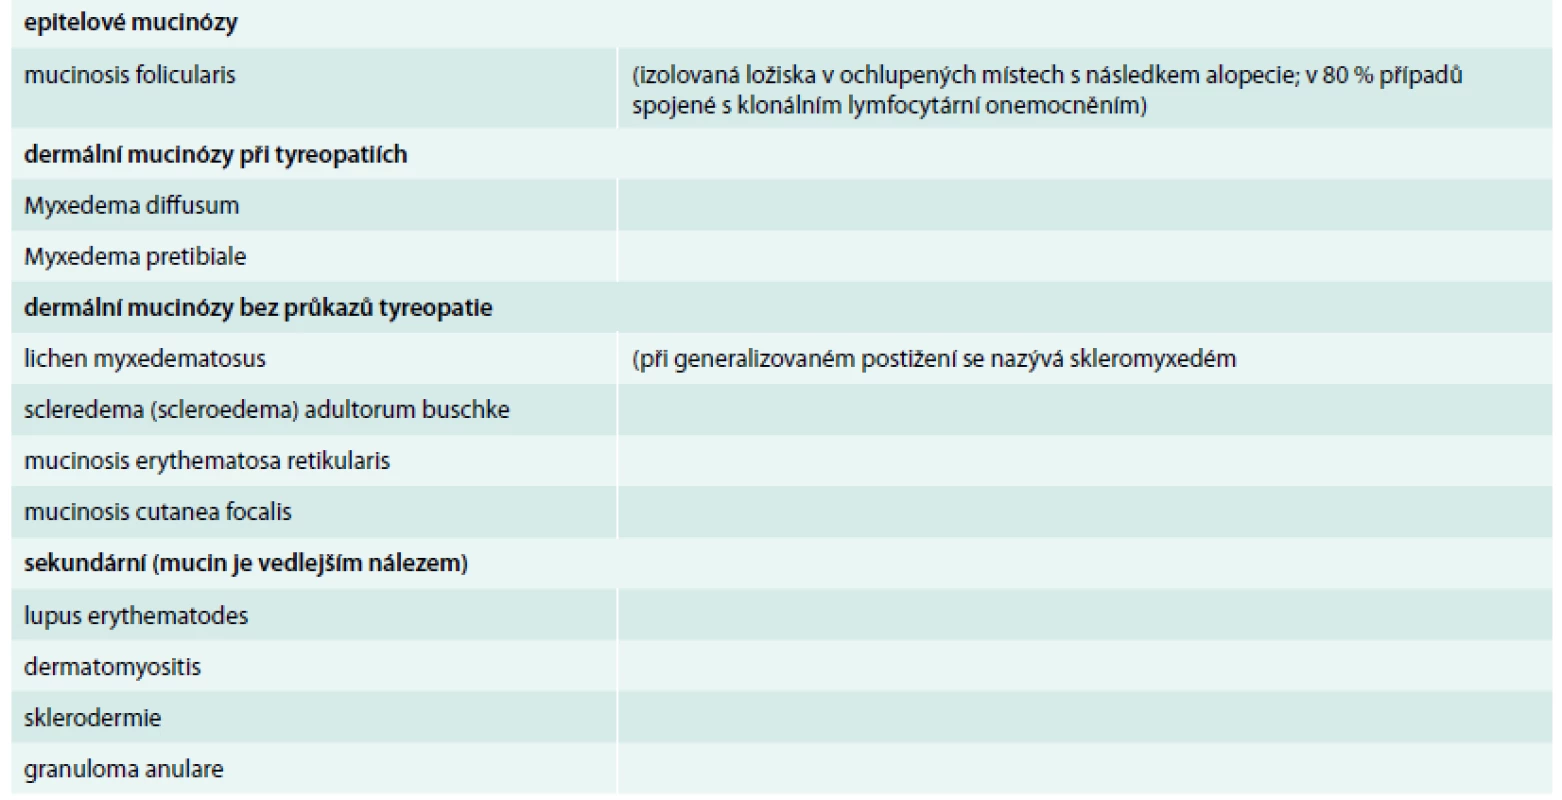 Přehled základních kožních mucinóz [1,4]